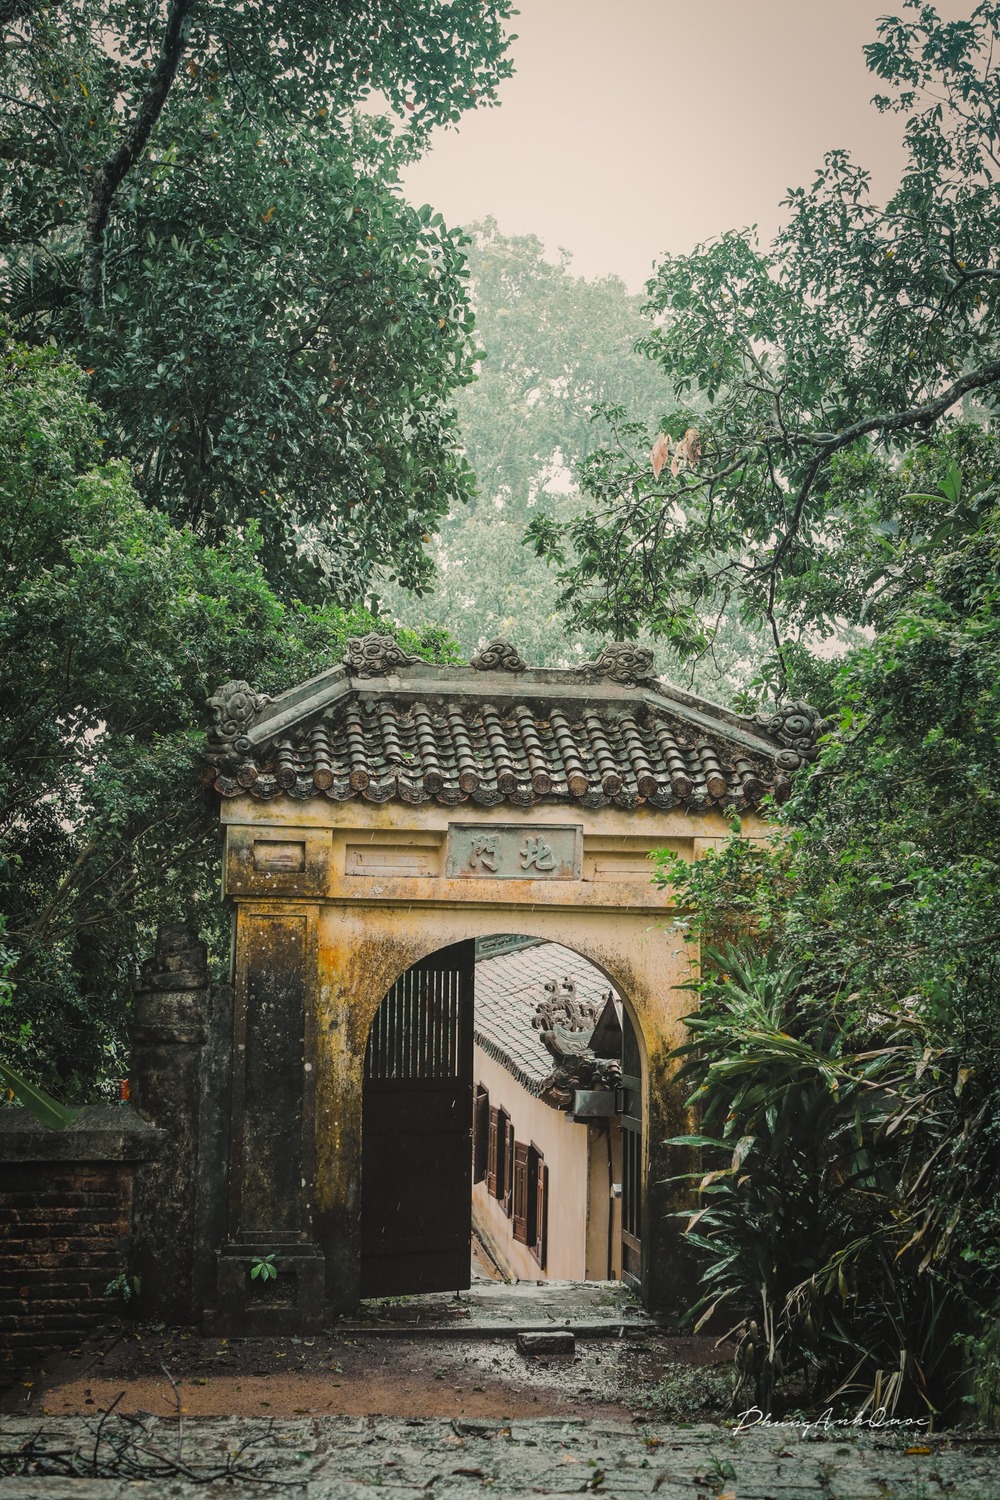 Bắc Môn. Này là chiếc cổng nhỏ nằm phía sau chùa, mở ra con đường lên gác Đại Từ, tháp Điều Ngự và đình Tiến Sảng